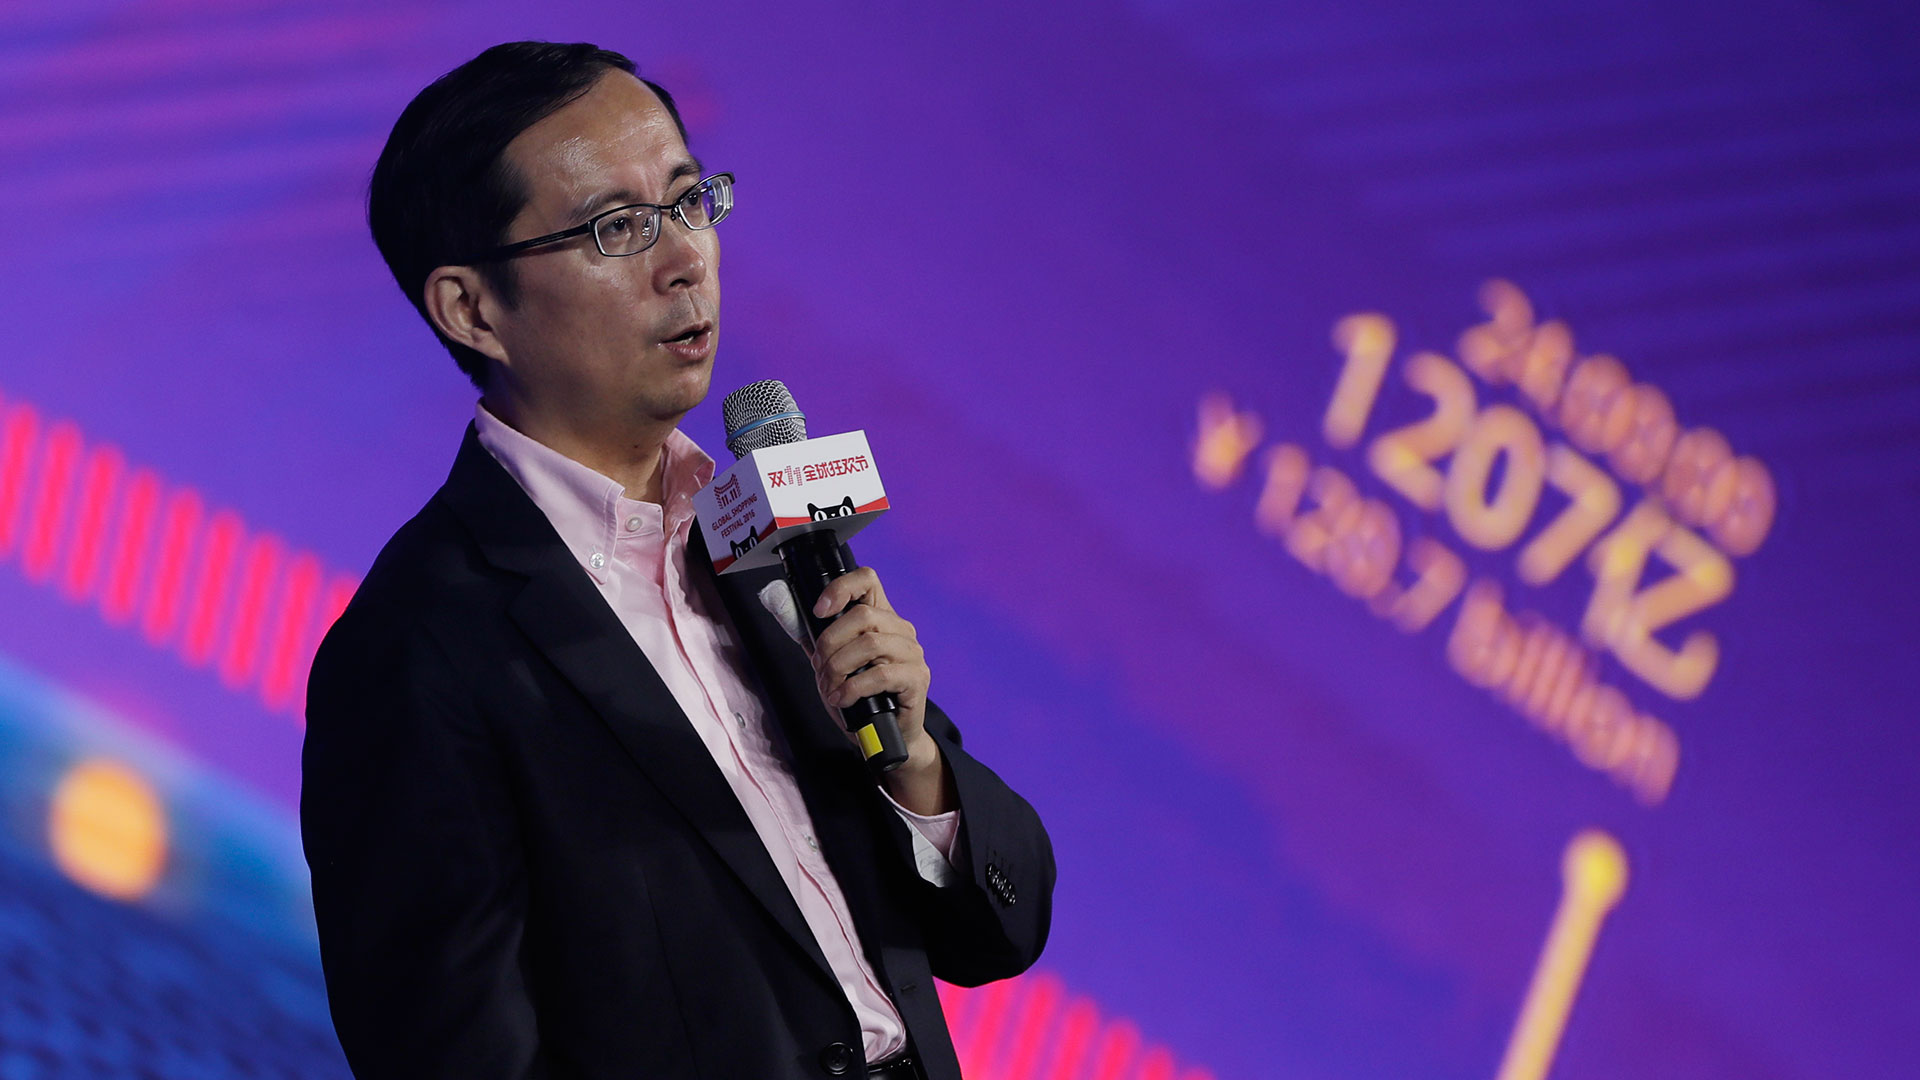 Daniel Zhang sustituirá a Jack Ma como presidente de Alibaba en 2019